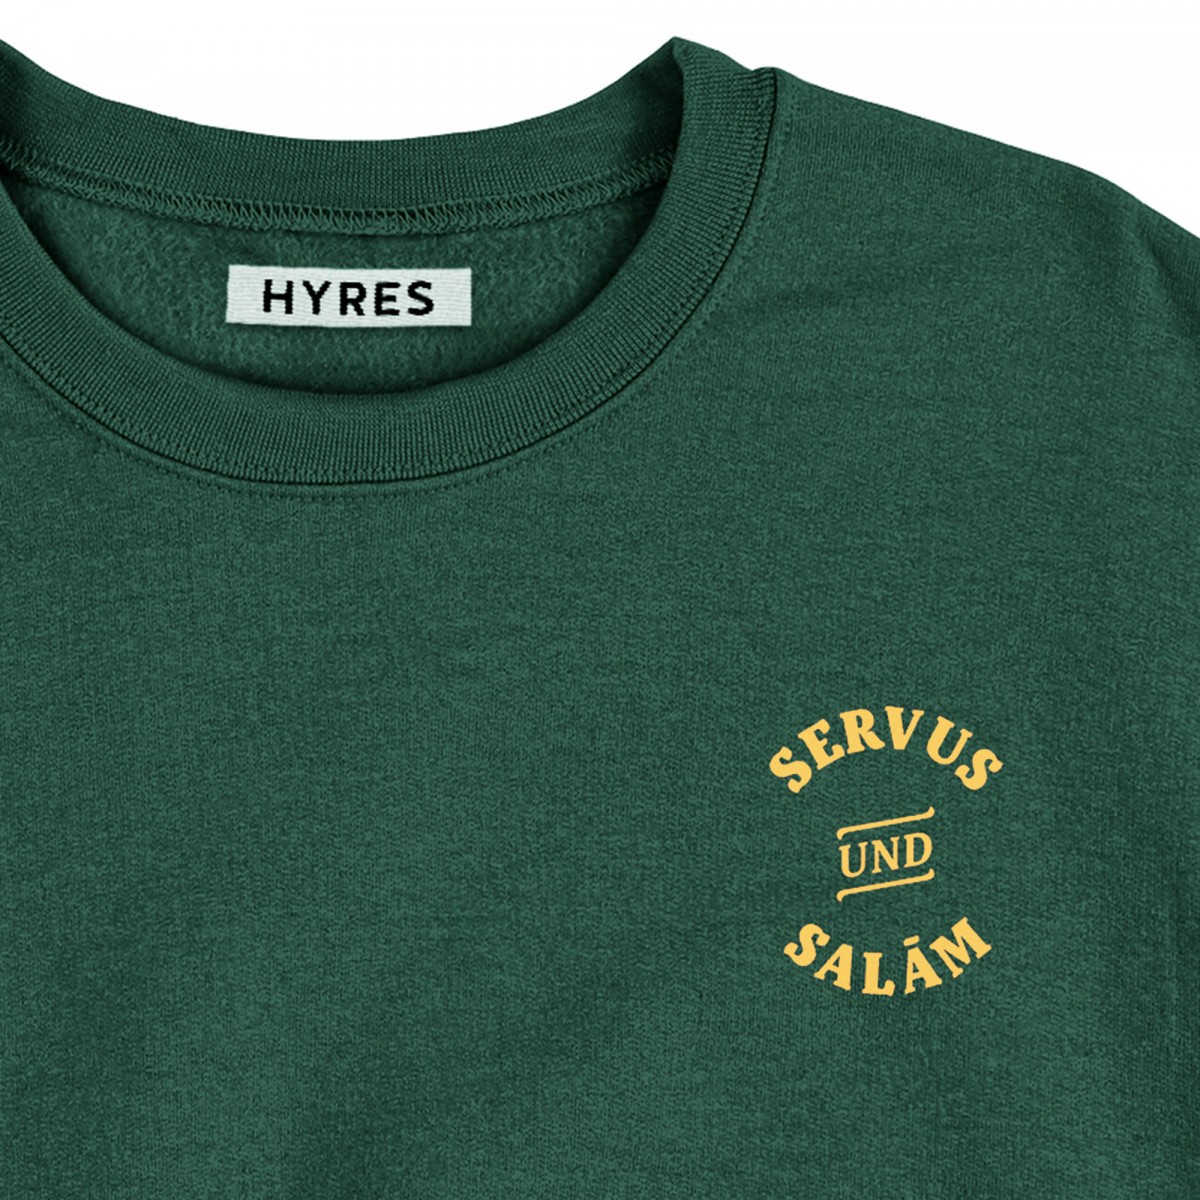 HYRES Sweater Servus & Salam / Glazed Green